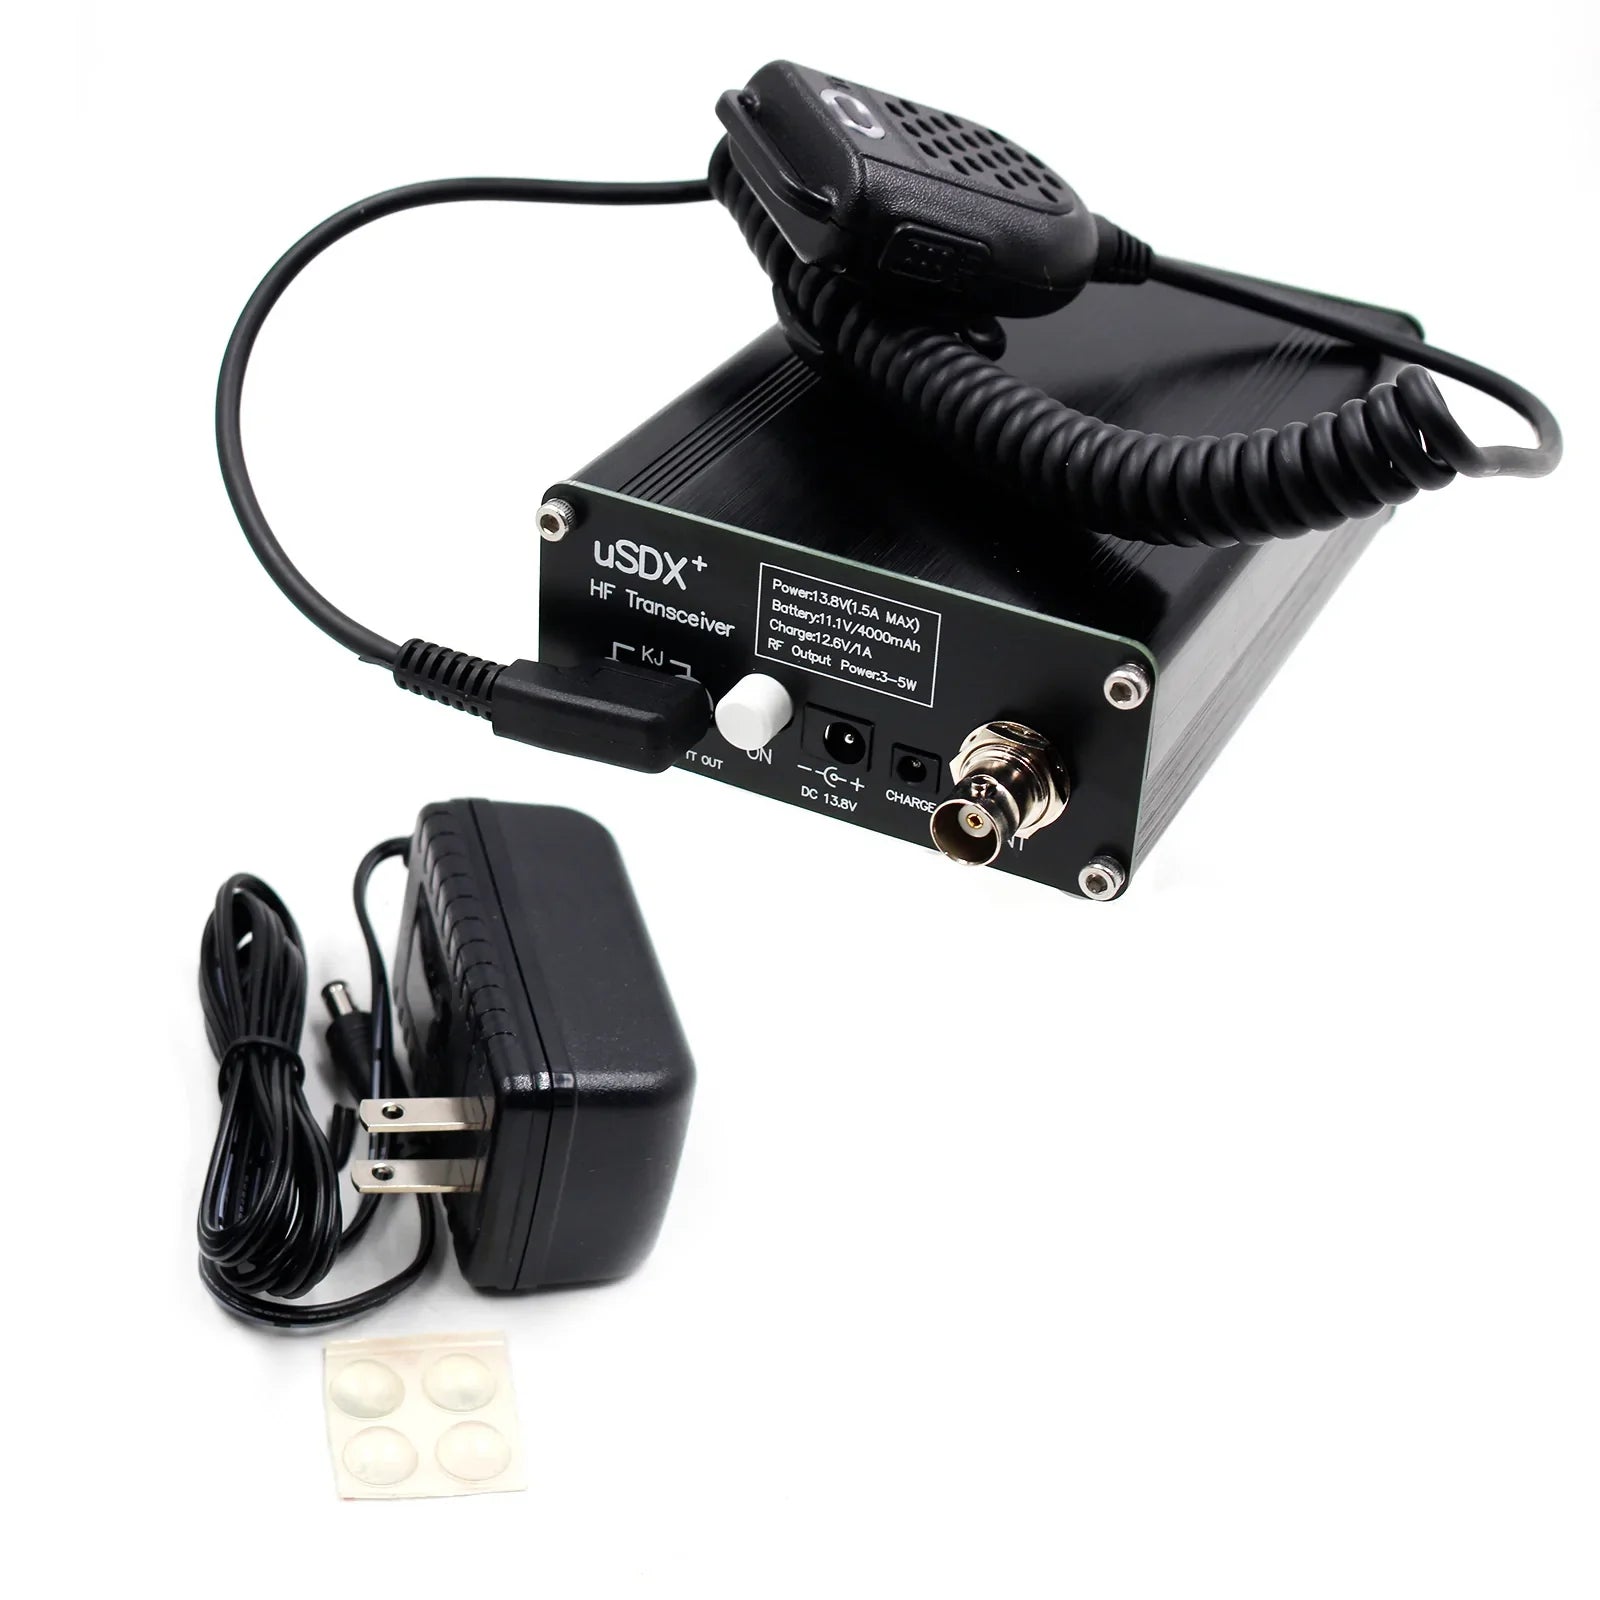 Usdr usdx+ Plus Émetteur-récepteur Tous les modes Radio HF 8 bandes avec adaptateur secteur Prise US